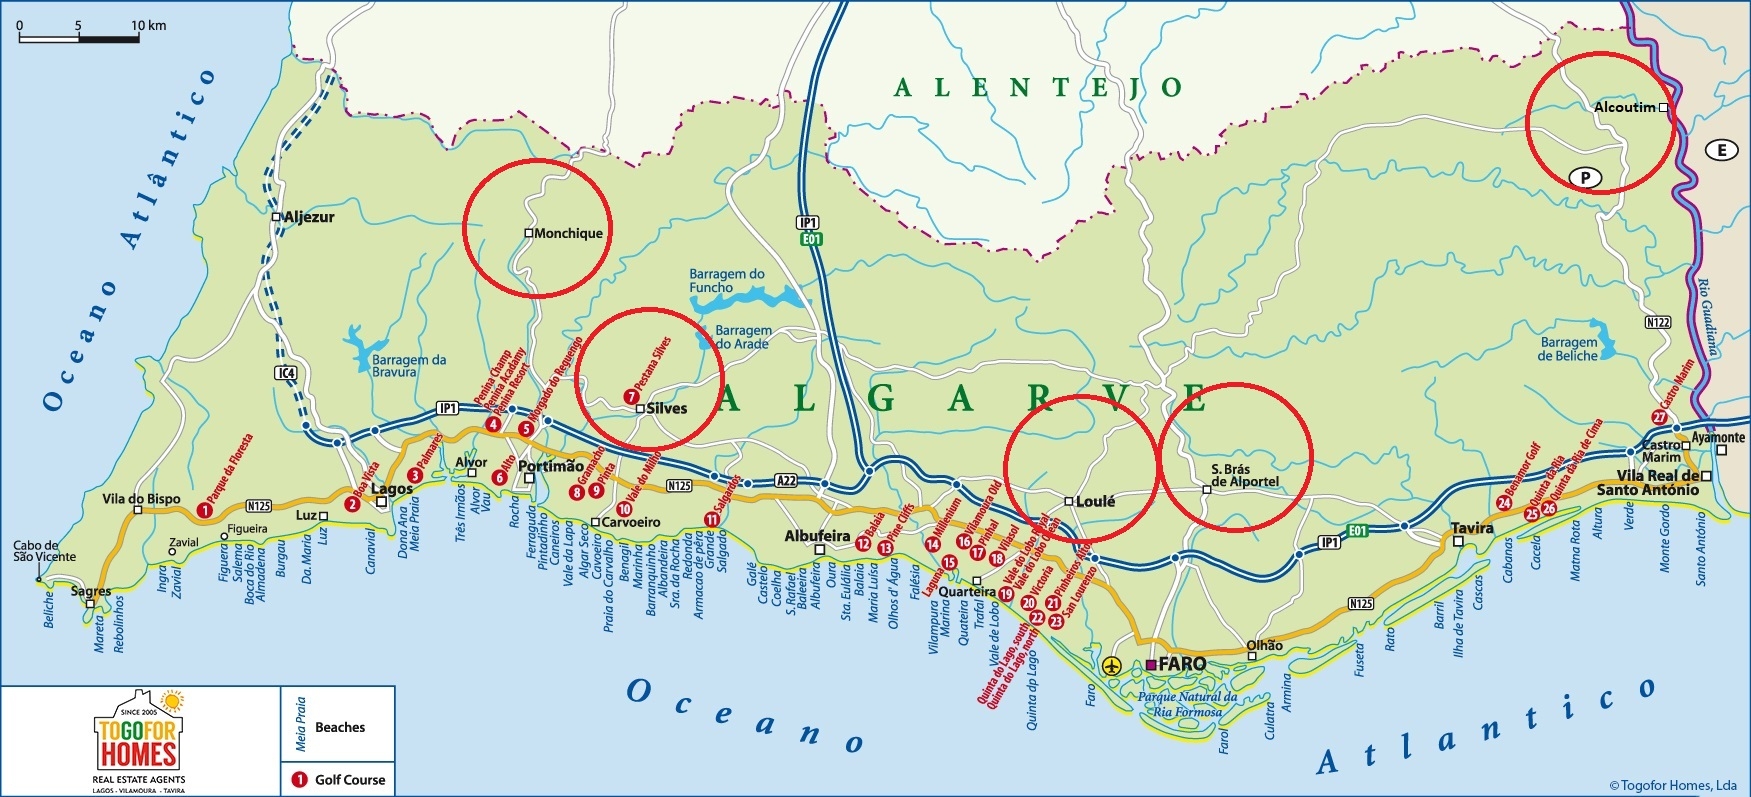 Propriedades Escondidas, Longe da Costa Algarvia, com Preços Acessíveis – Oportunidades de Negócio 